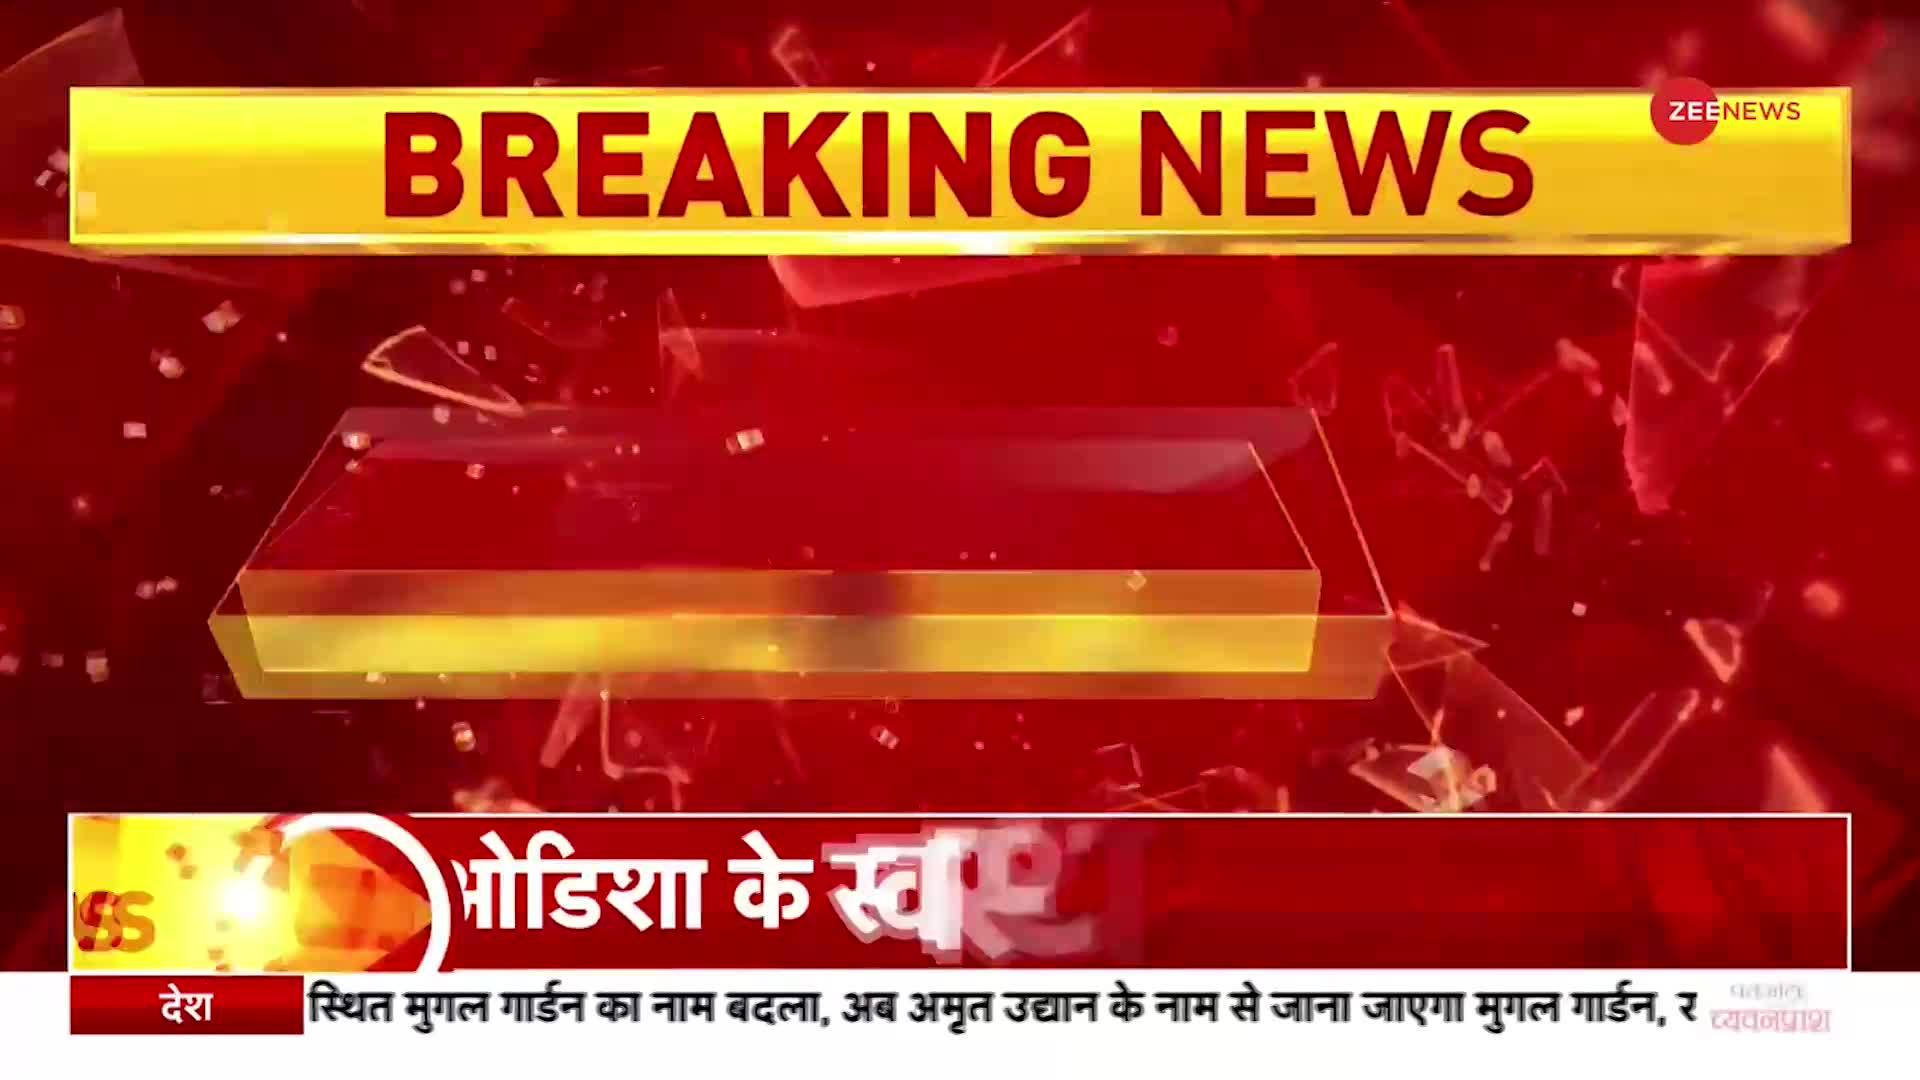 Breaking News: ओडिशा के स्वास्थ्य मंत्री नाबा दास को मारी गोली,अज्ञात लोगों ने नाबा दास पर हमला किया